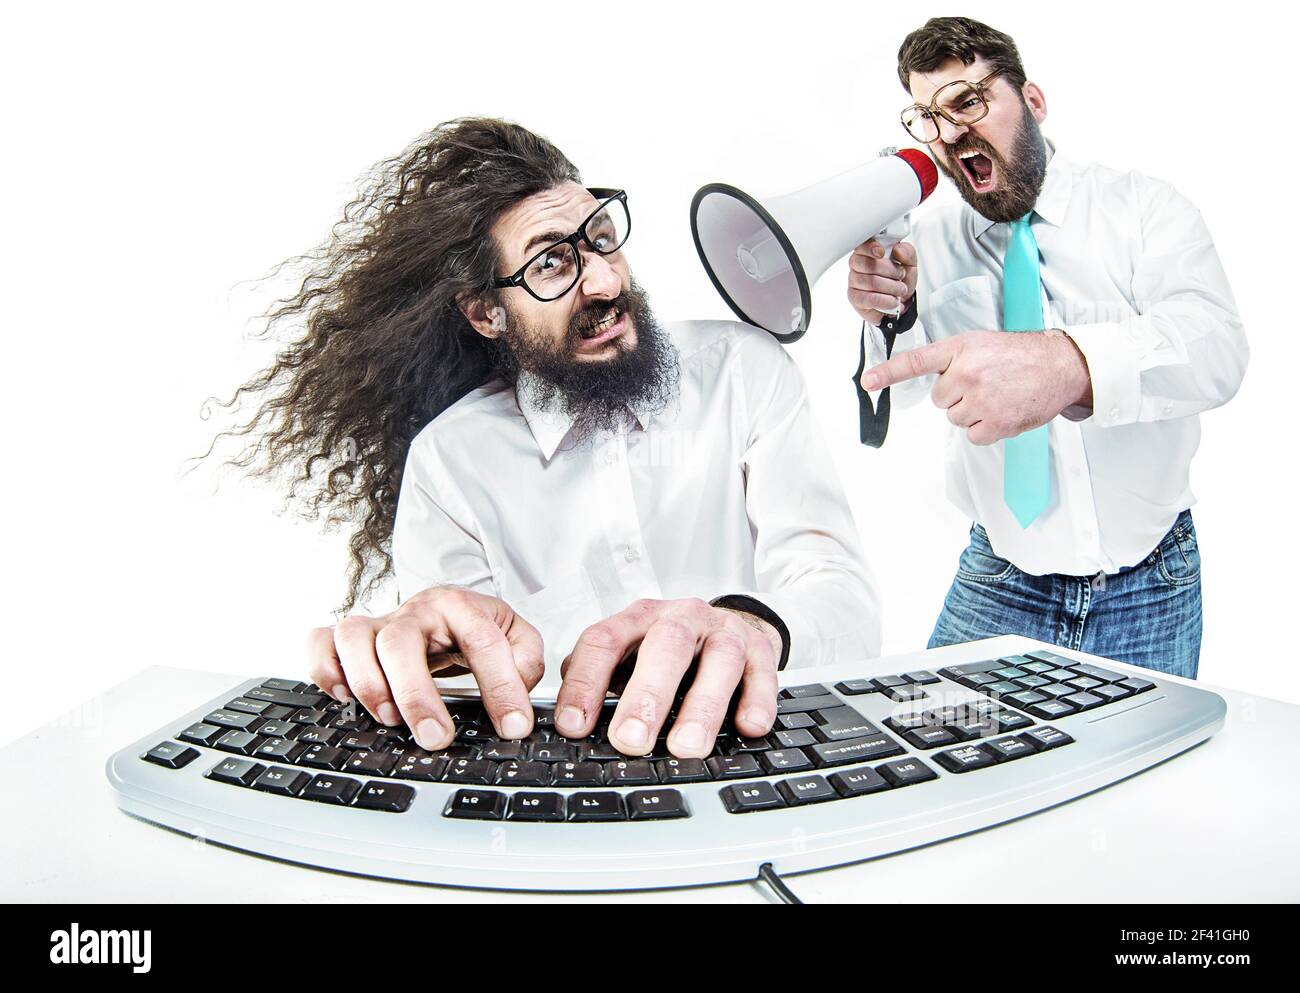 Bully boss yelling at the nerdy employee Stock Photo